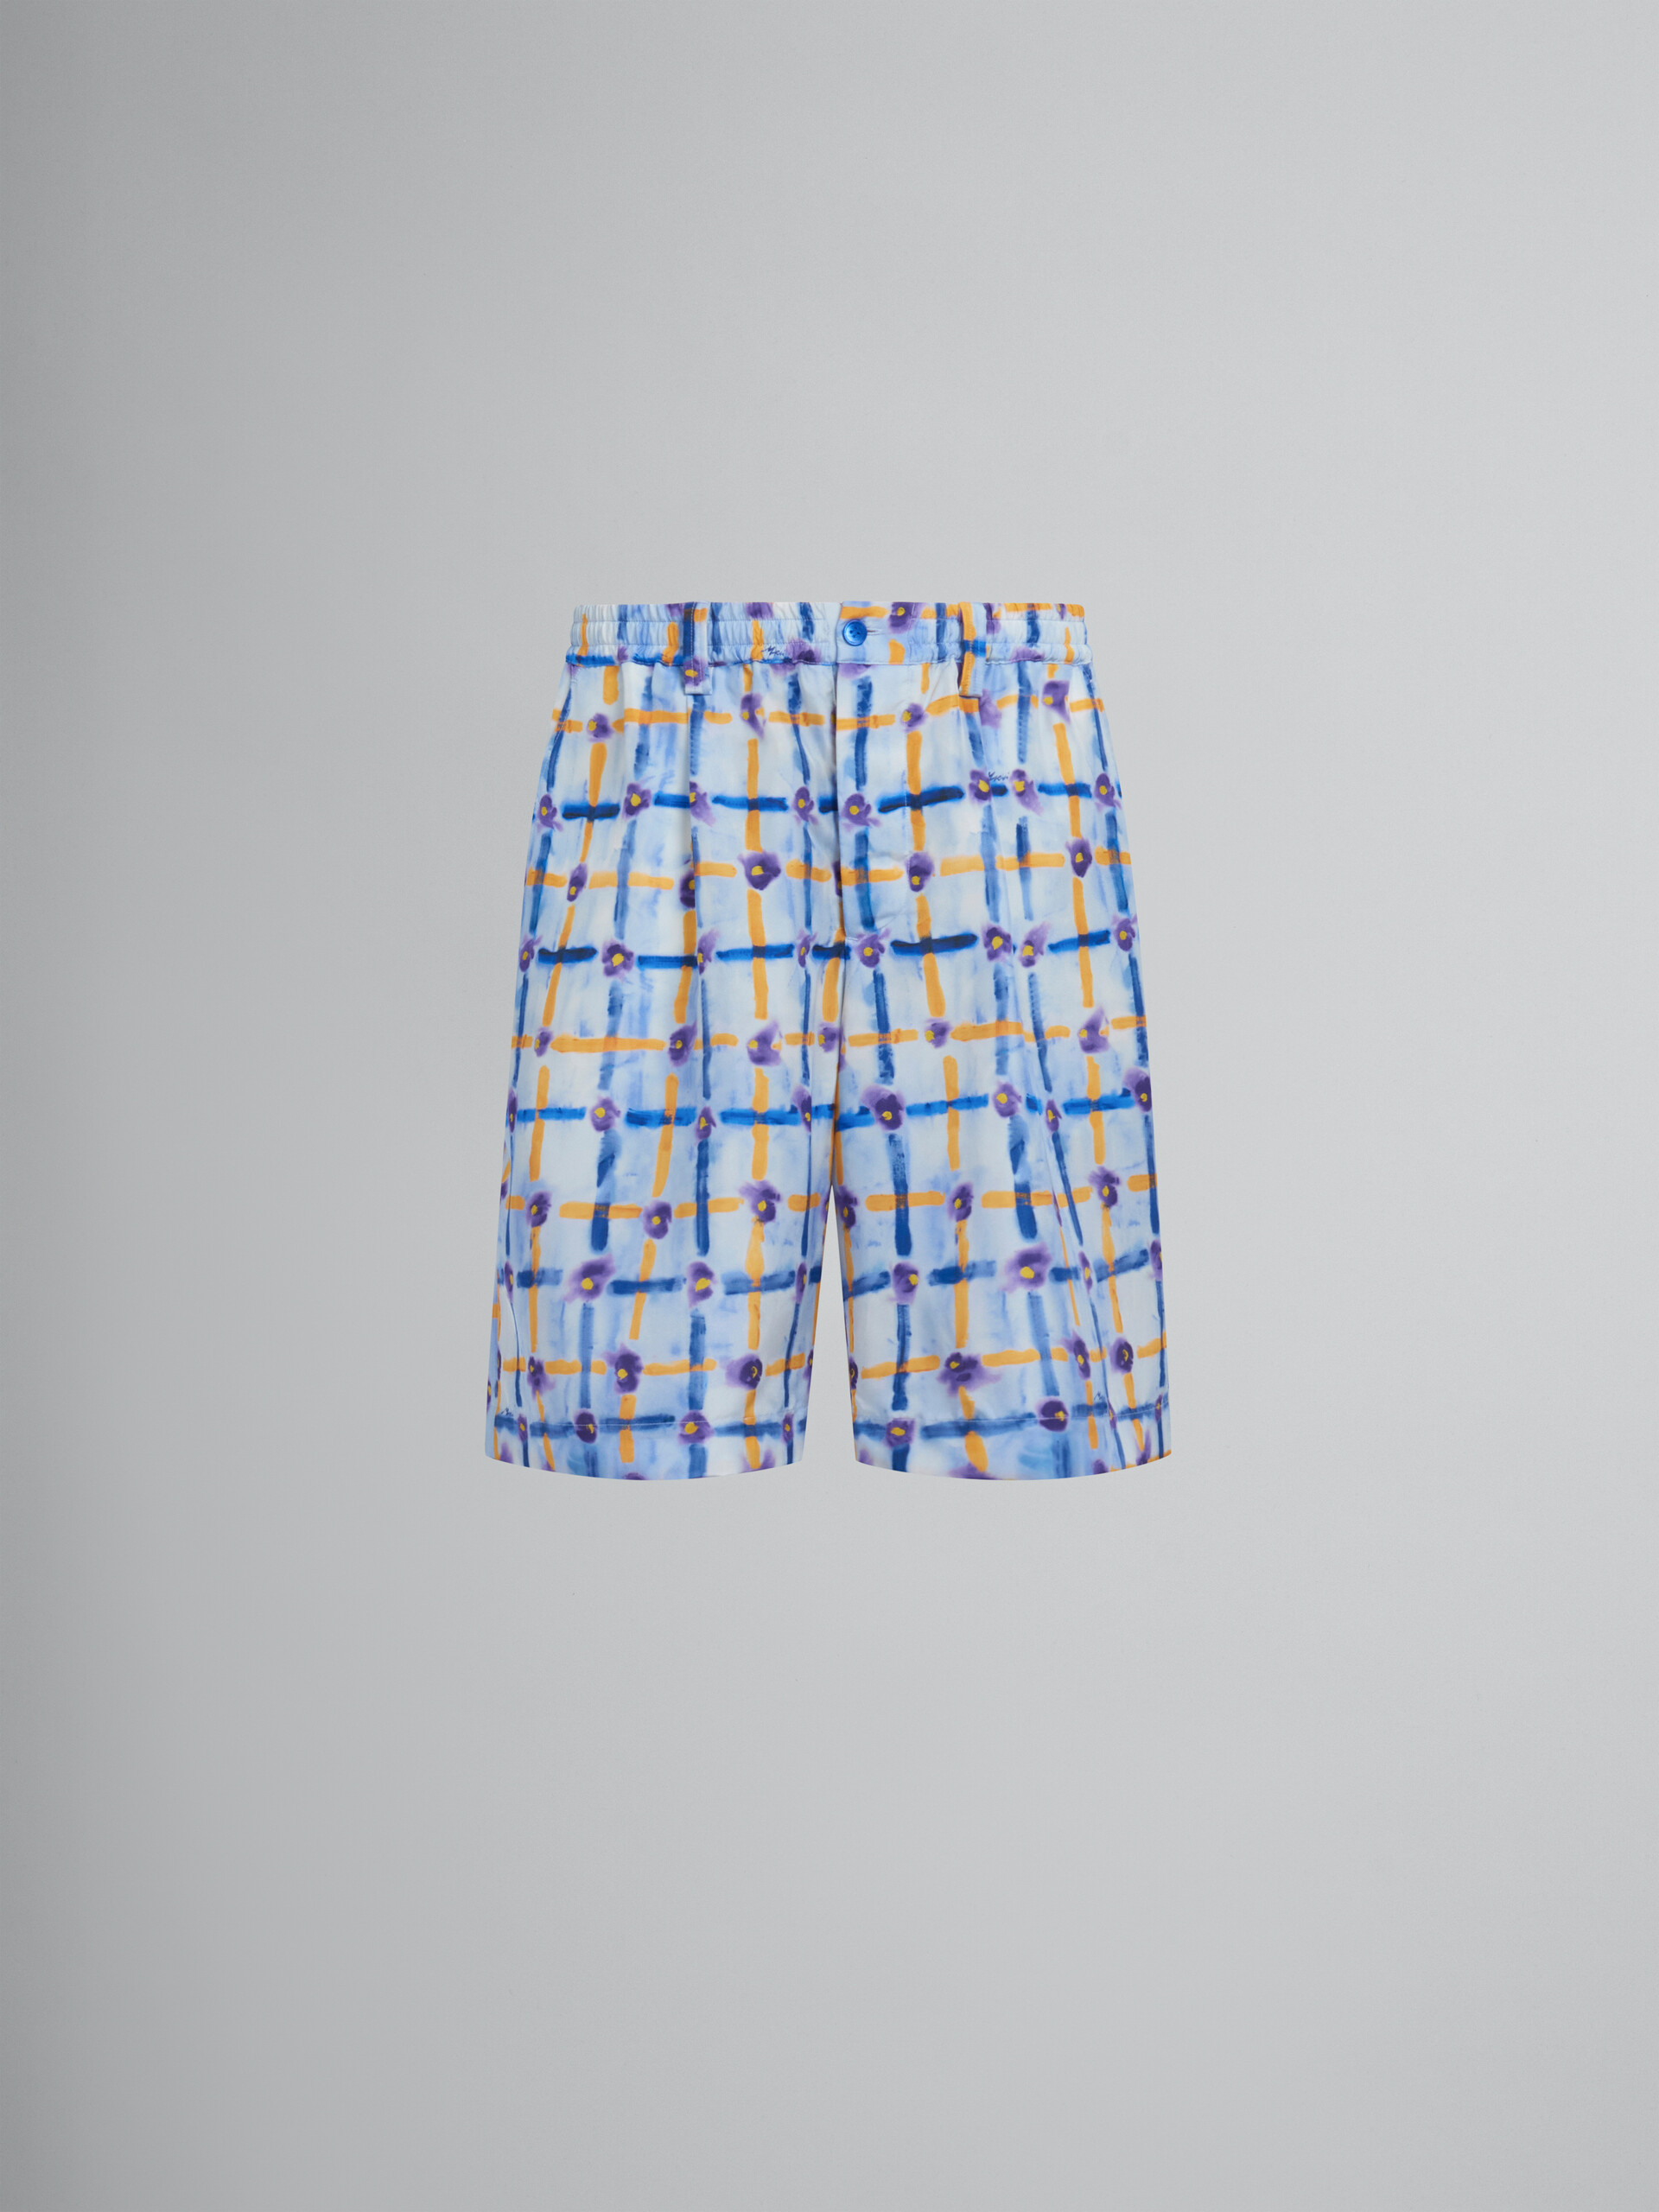 Hellblaue Shorts aus Habotai-Seide mit Kordelzug und Saraband-Print - Hosen - Image 1